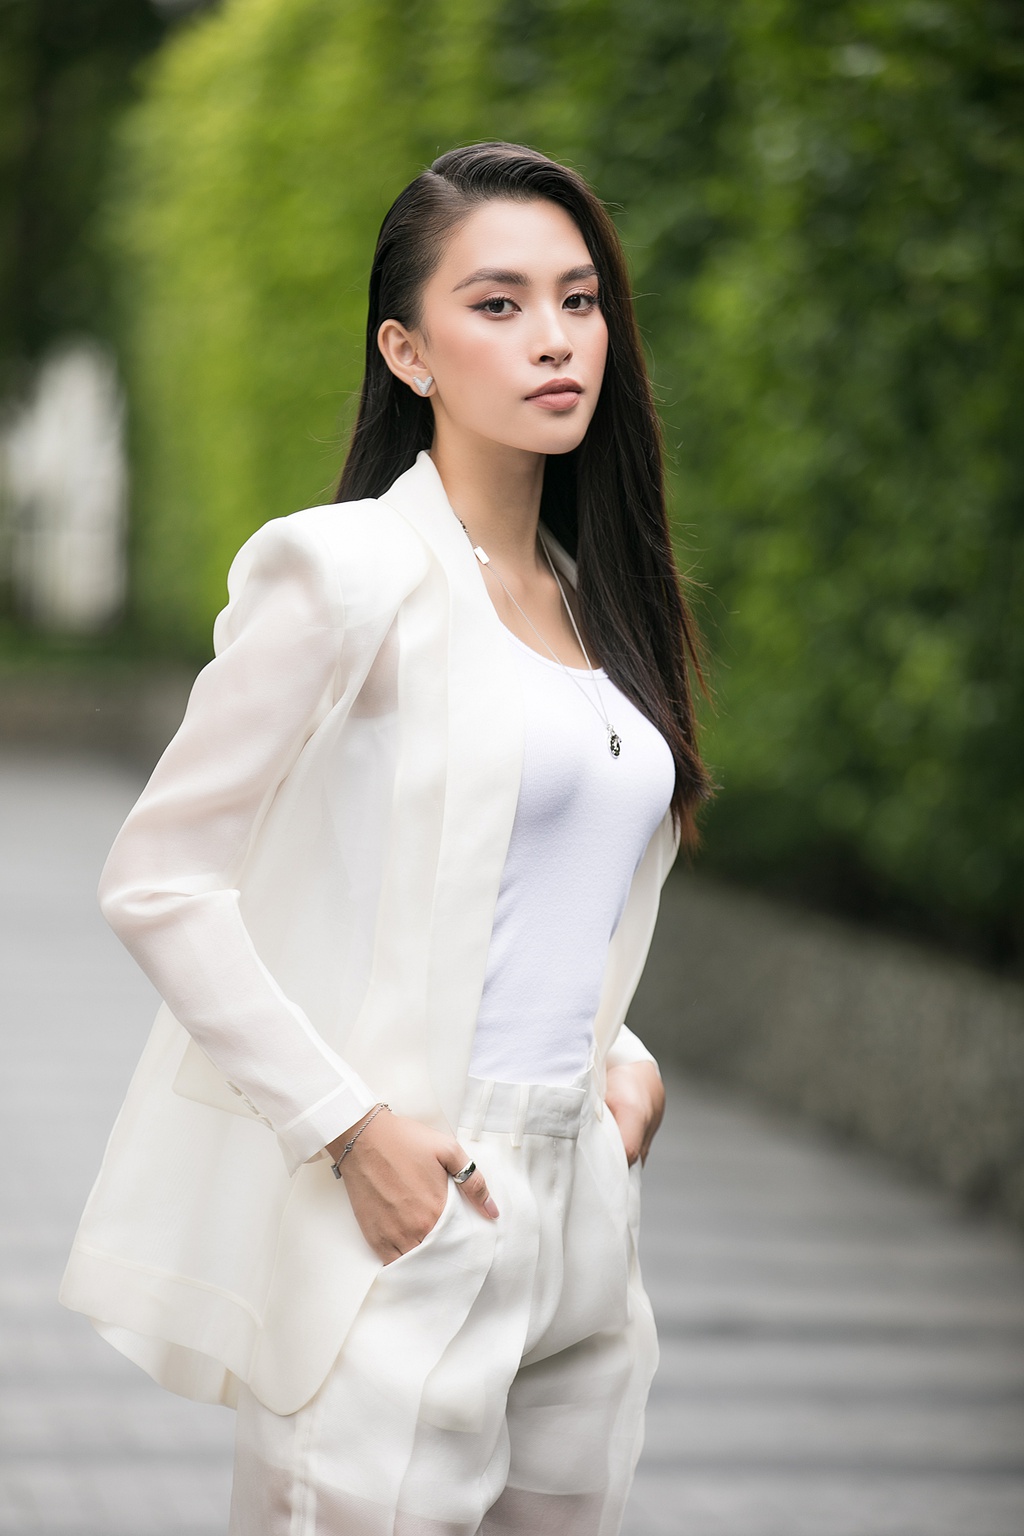 Tiểu Vy, Thụy Vân xuất hiện tại sơ khảo Hoa hậu Việt Nam 2020